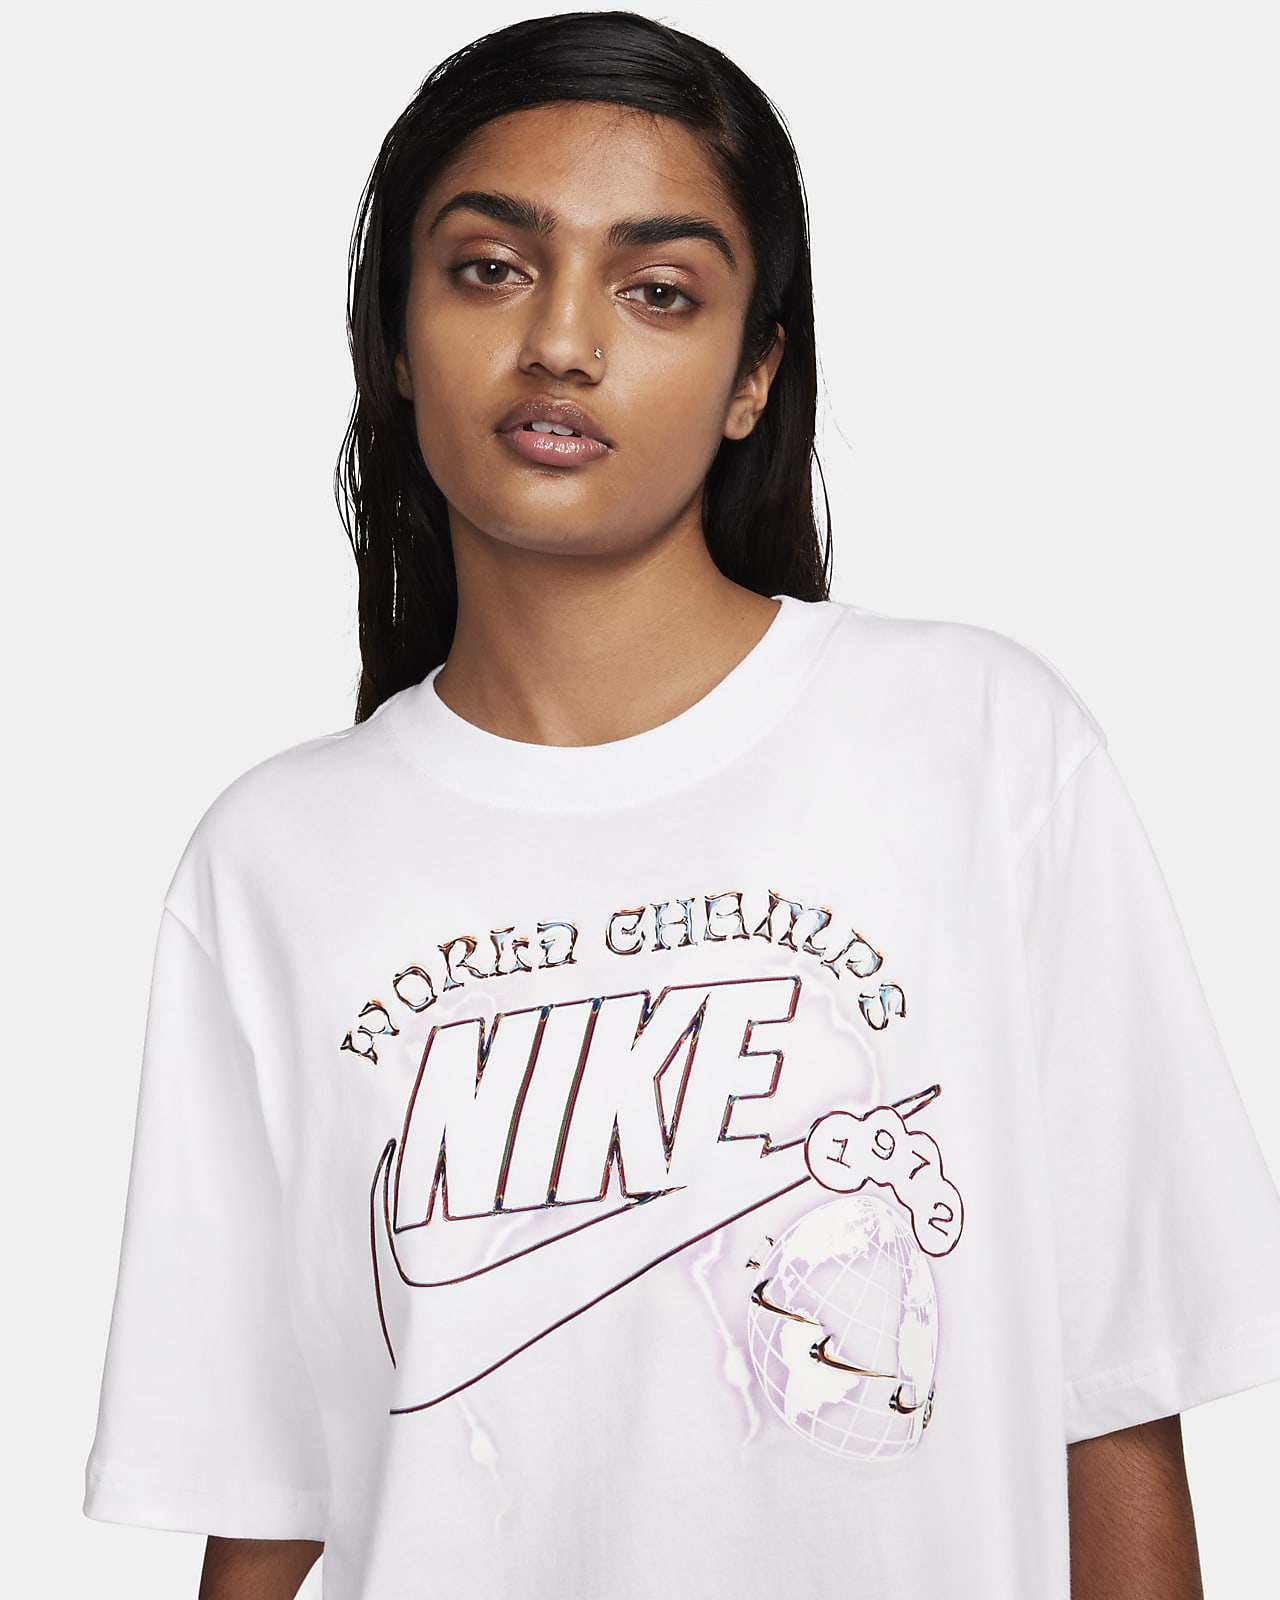 Nike Sportswear Women's T-Shirt. Nike LU